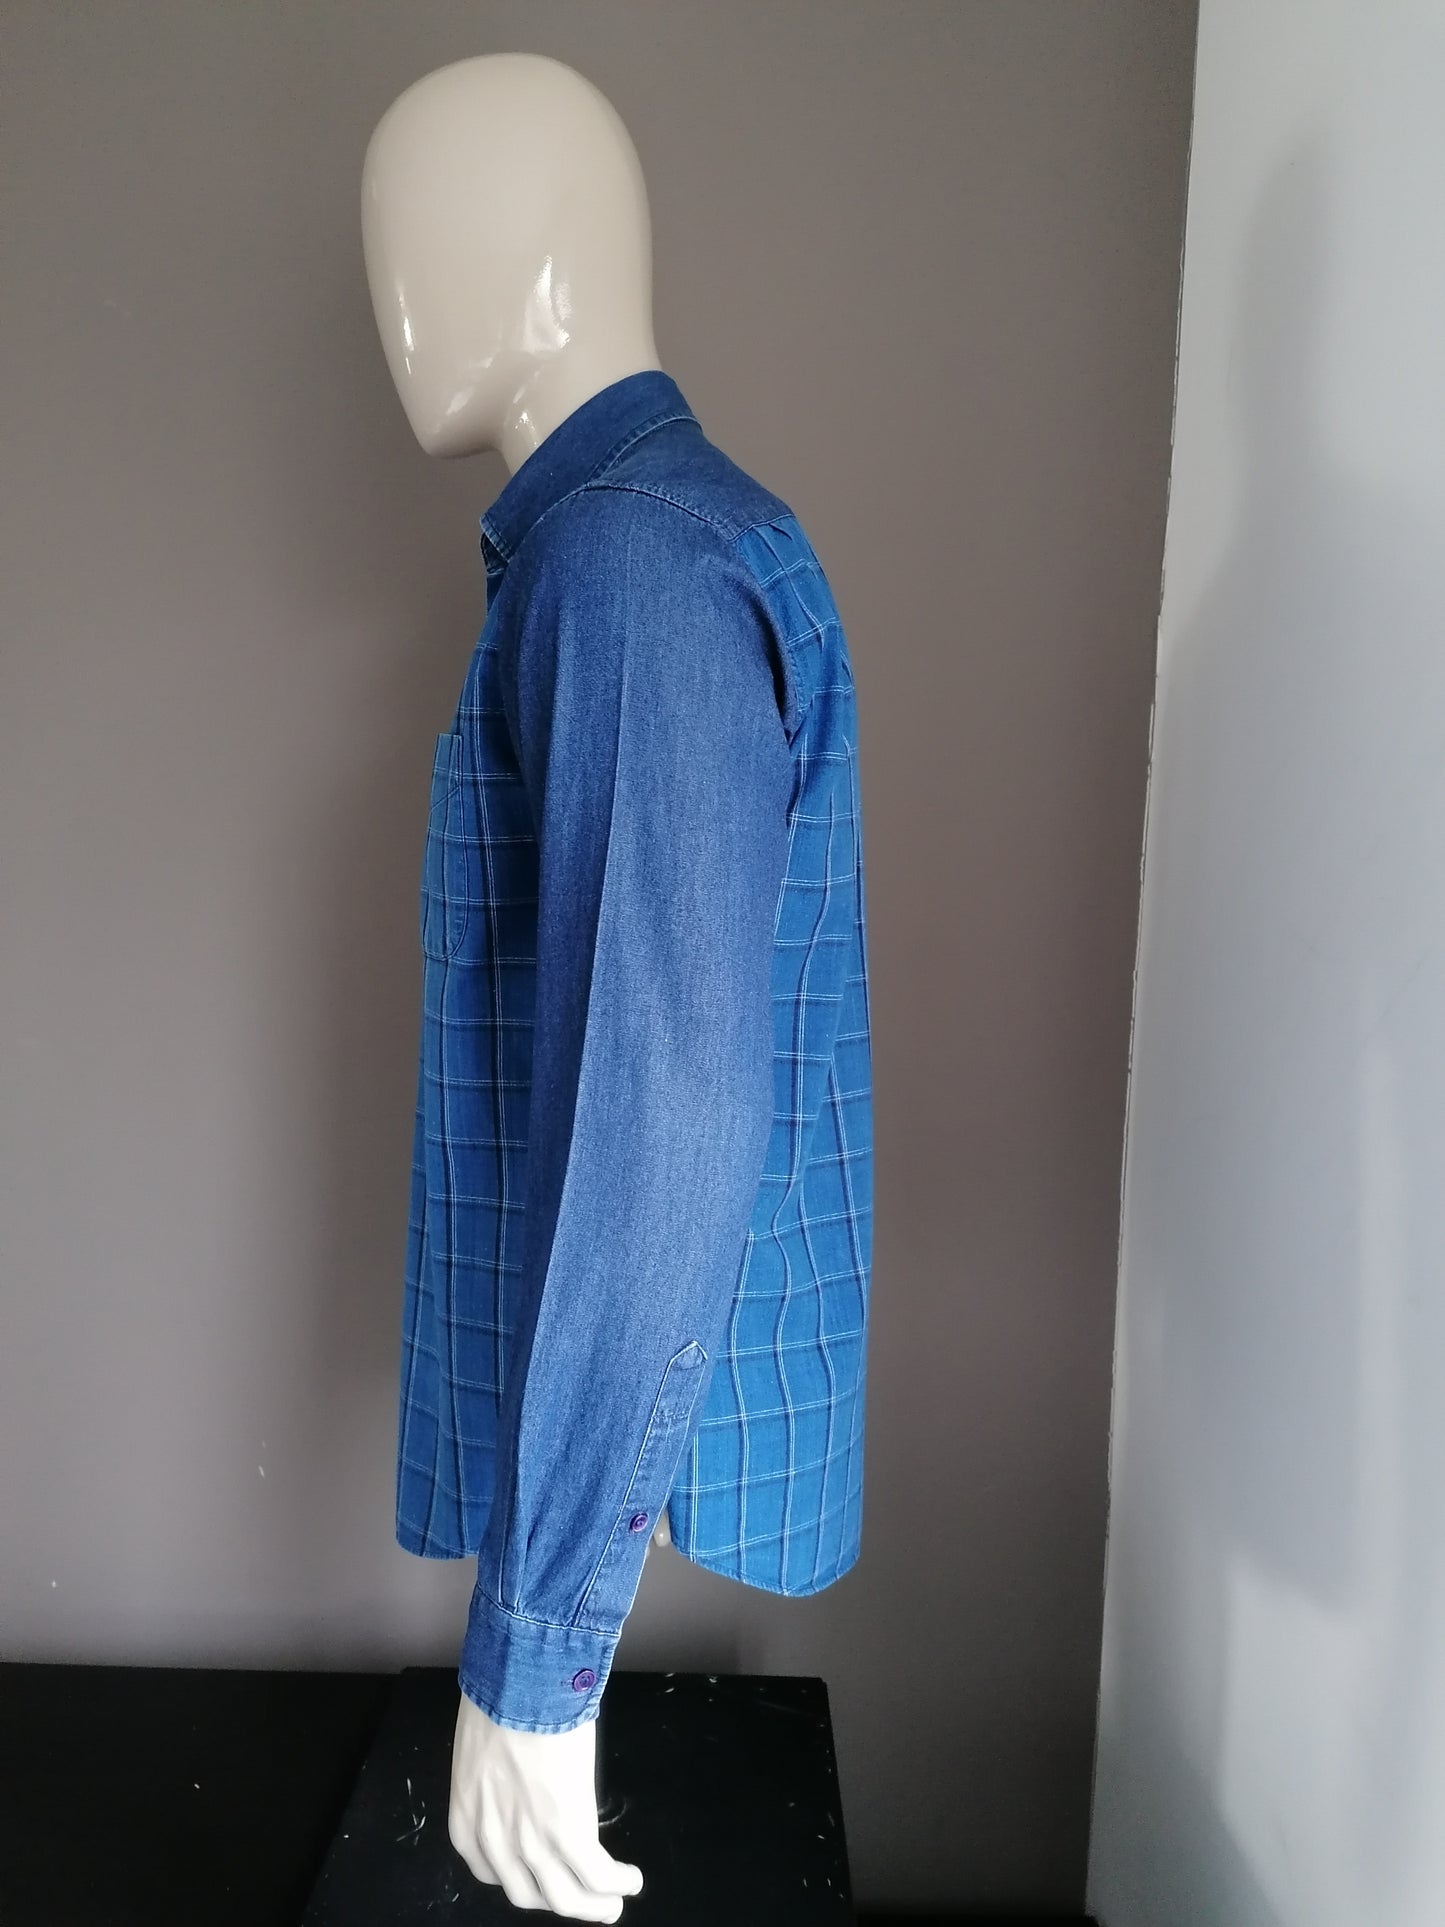 Galeries Lafayette Shirt. Motif de damier bleu. Taille M.